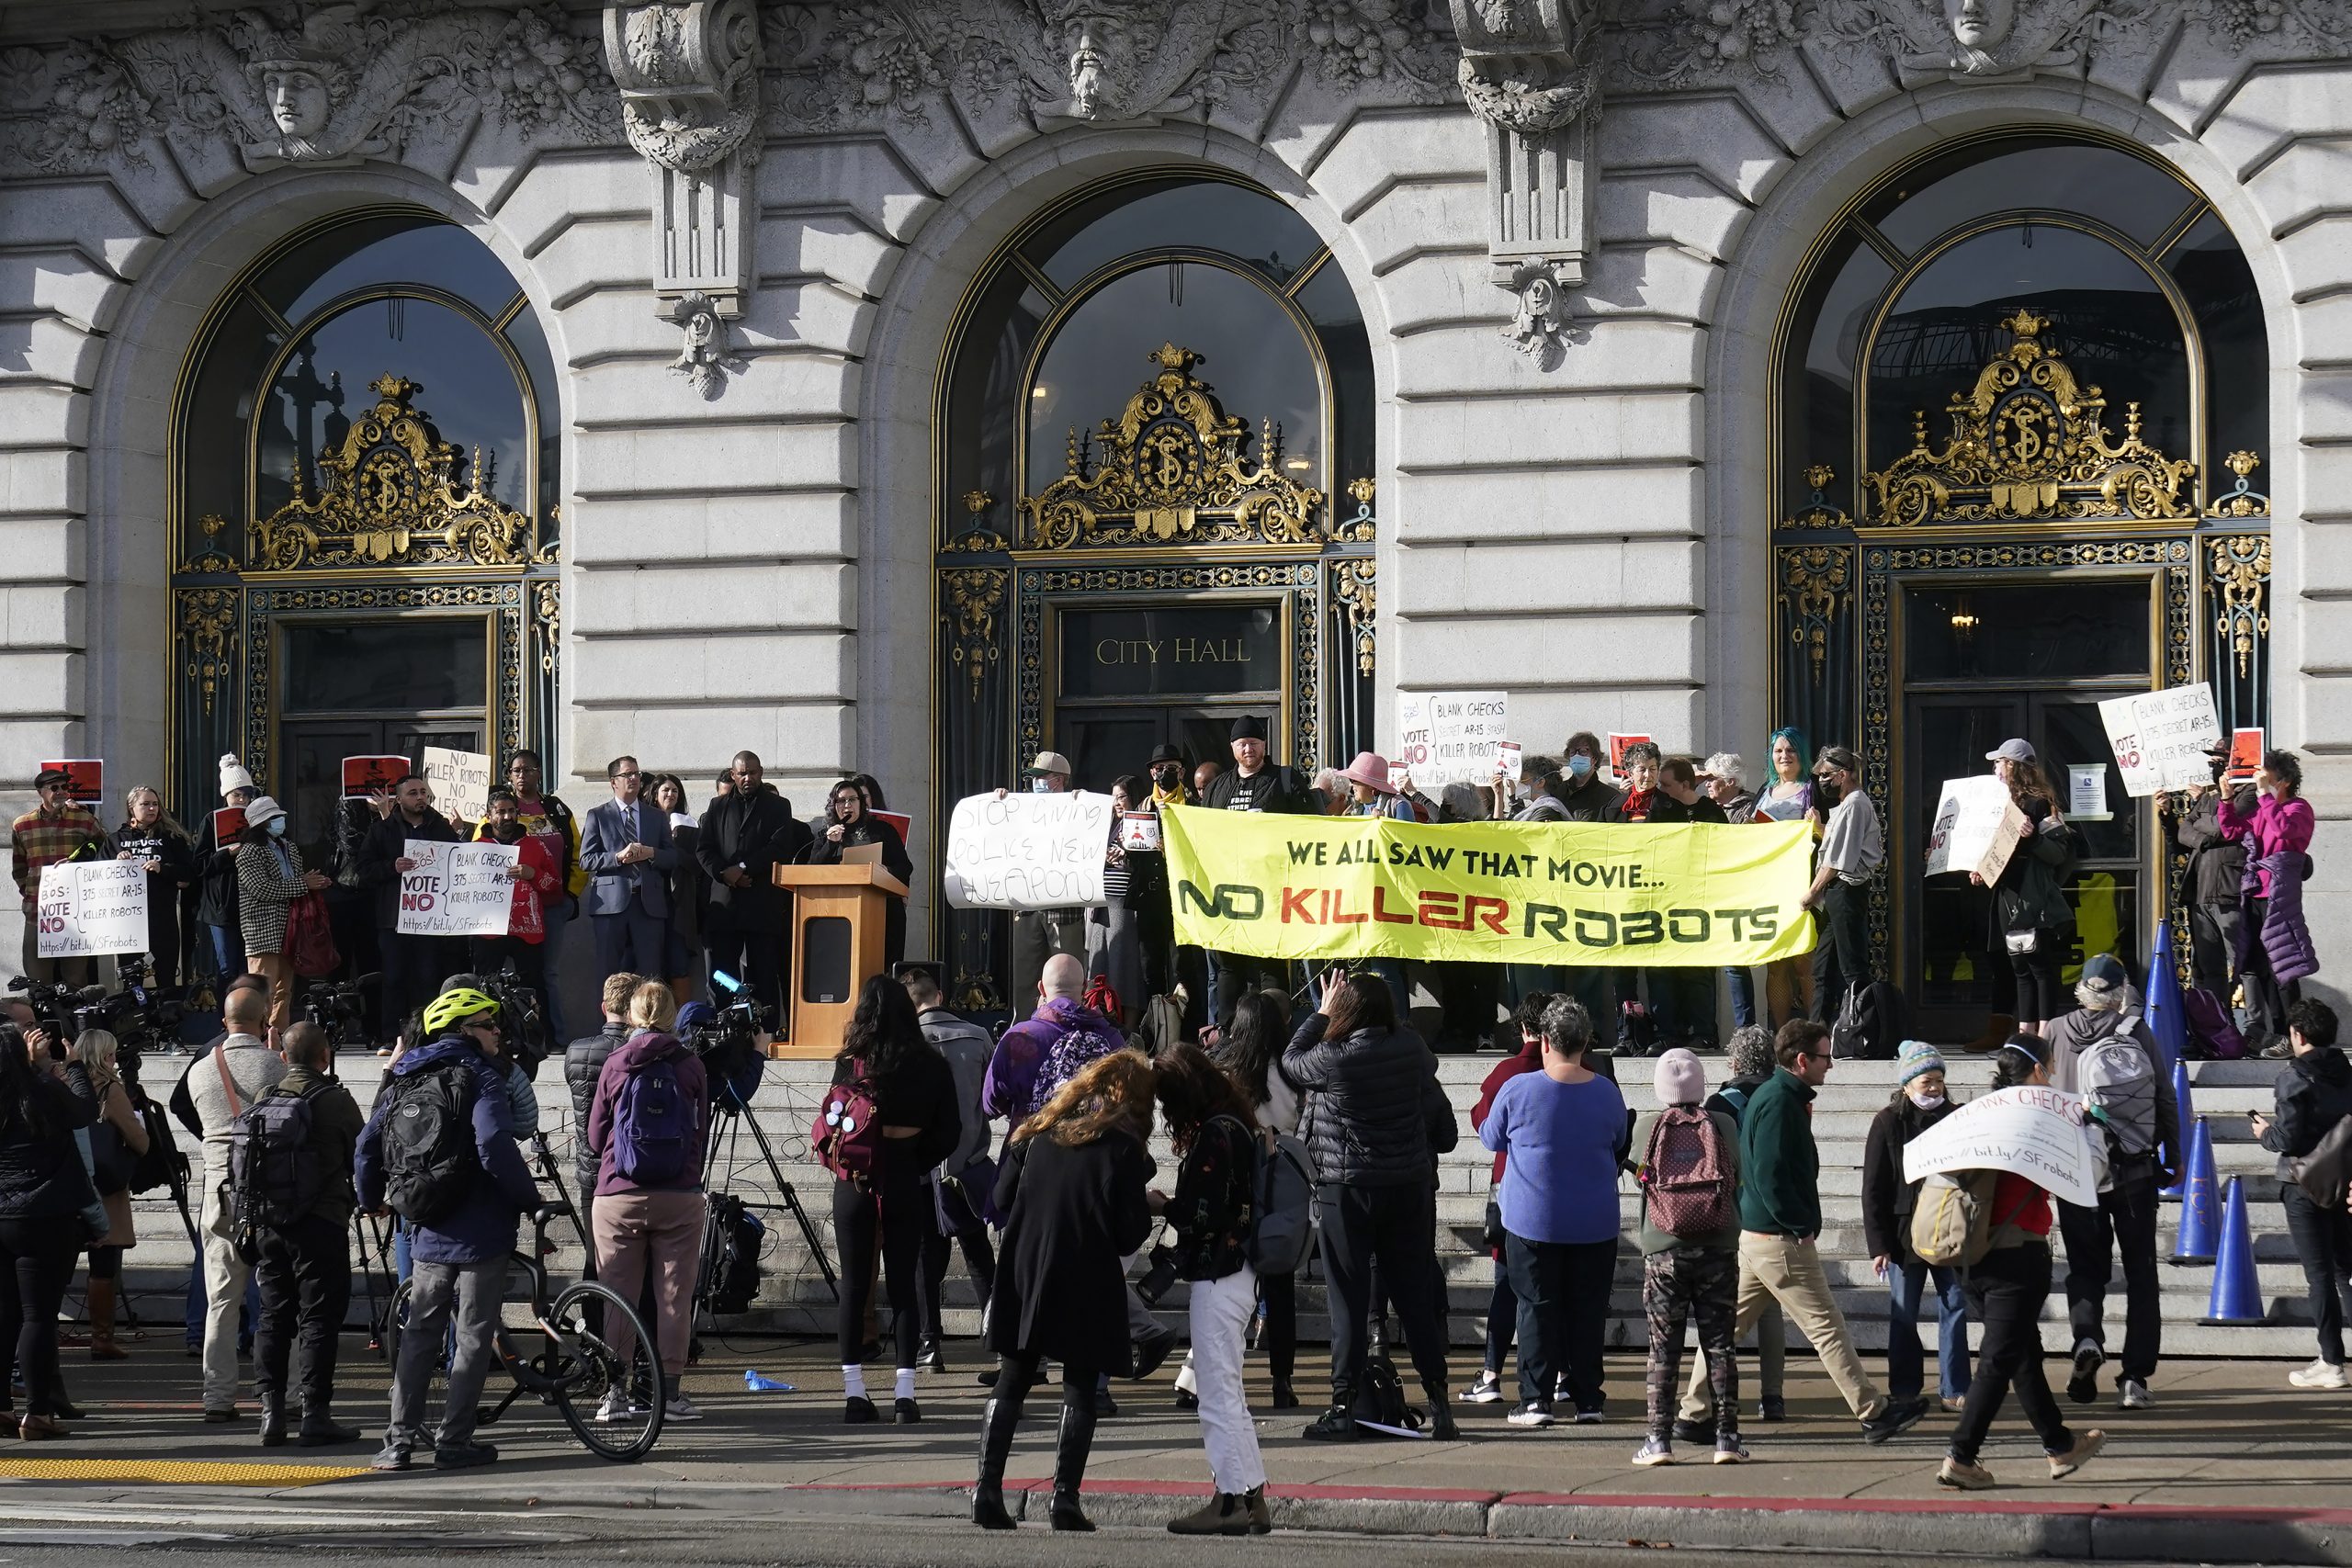 旧金山民众强烈反对 杀人机器人政策叫停